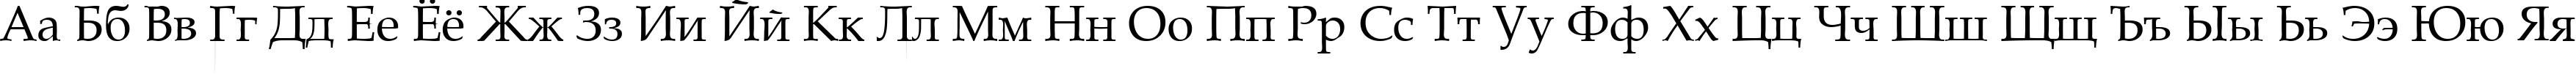 Пример написания русского алфавита шрифтом Gemerald